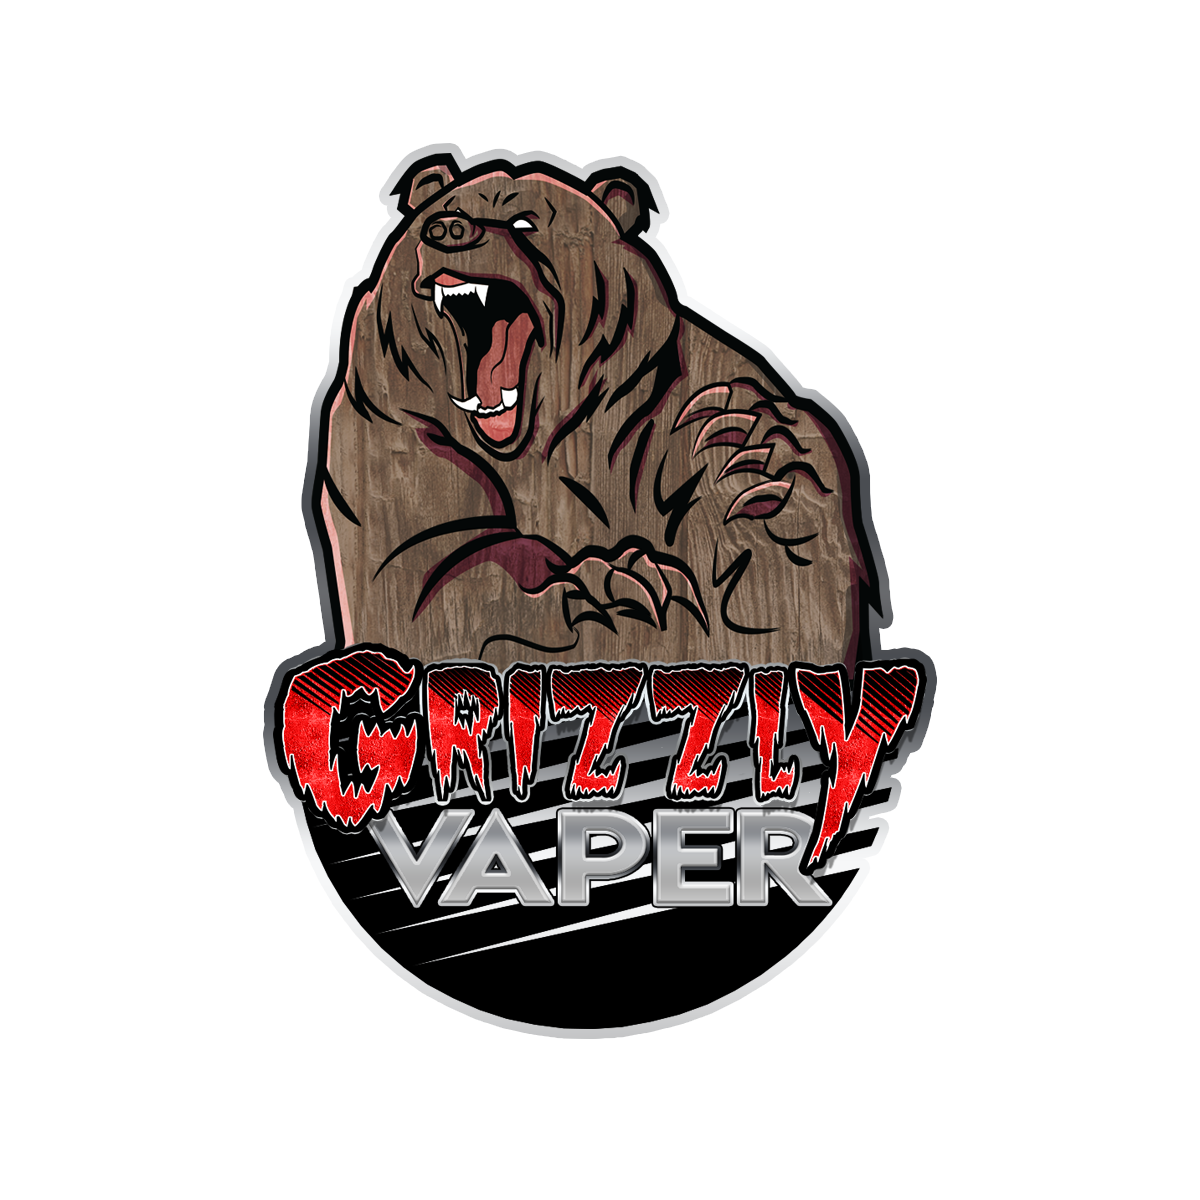 Grizzly vape shop